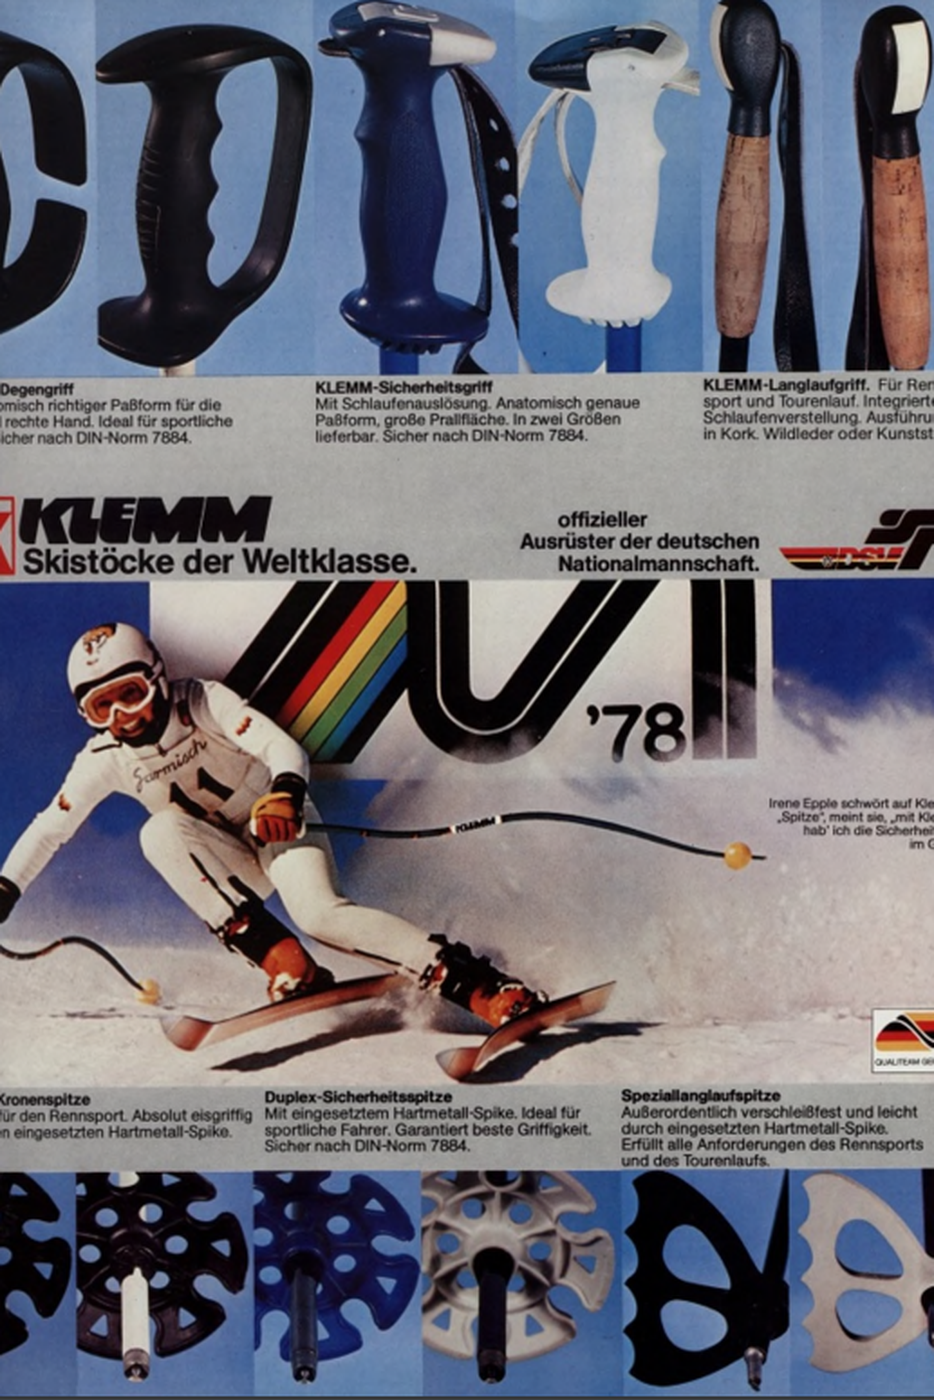 Klemm Werbung in Farbe zur Ski WM 78.